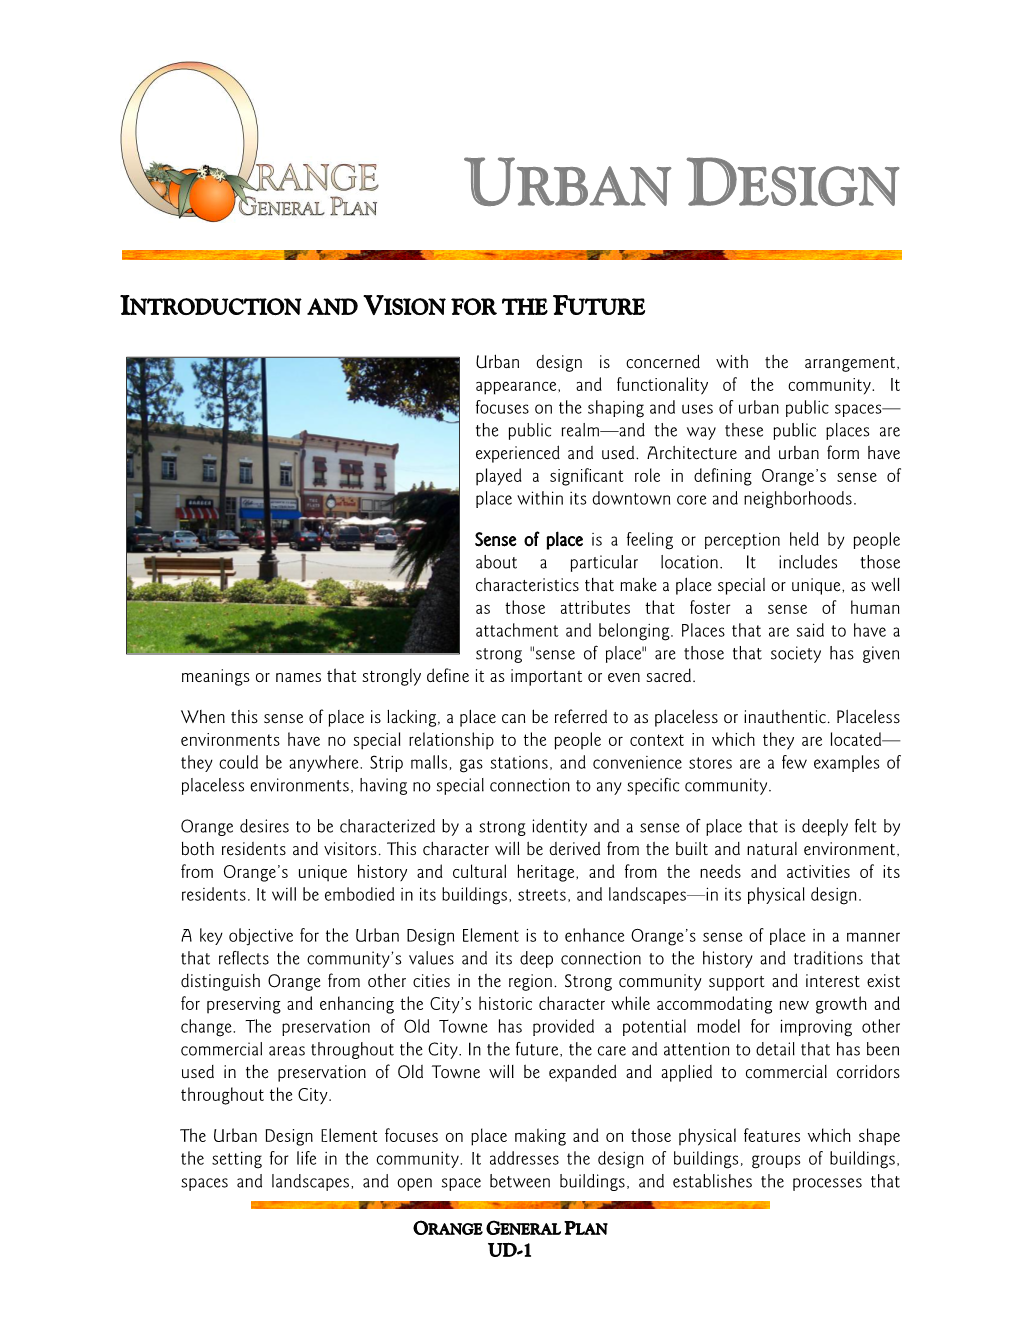 General Plan Ud-1 Urban Design